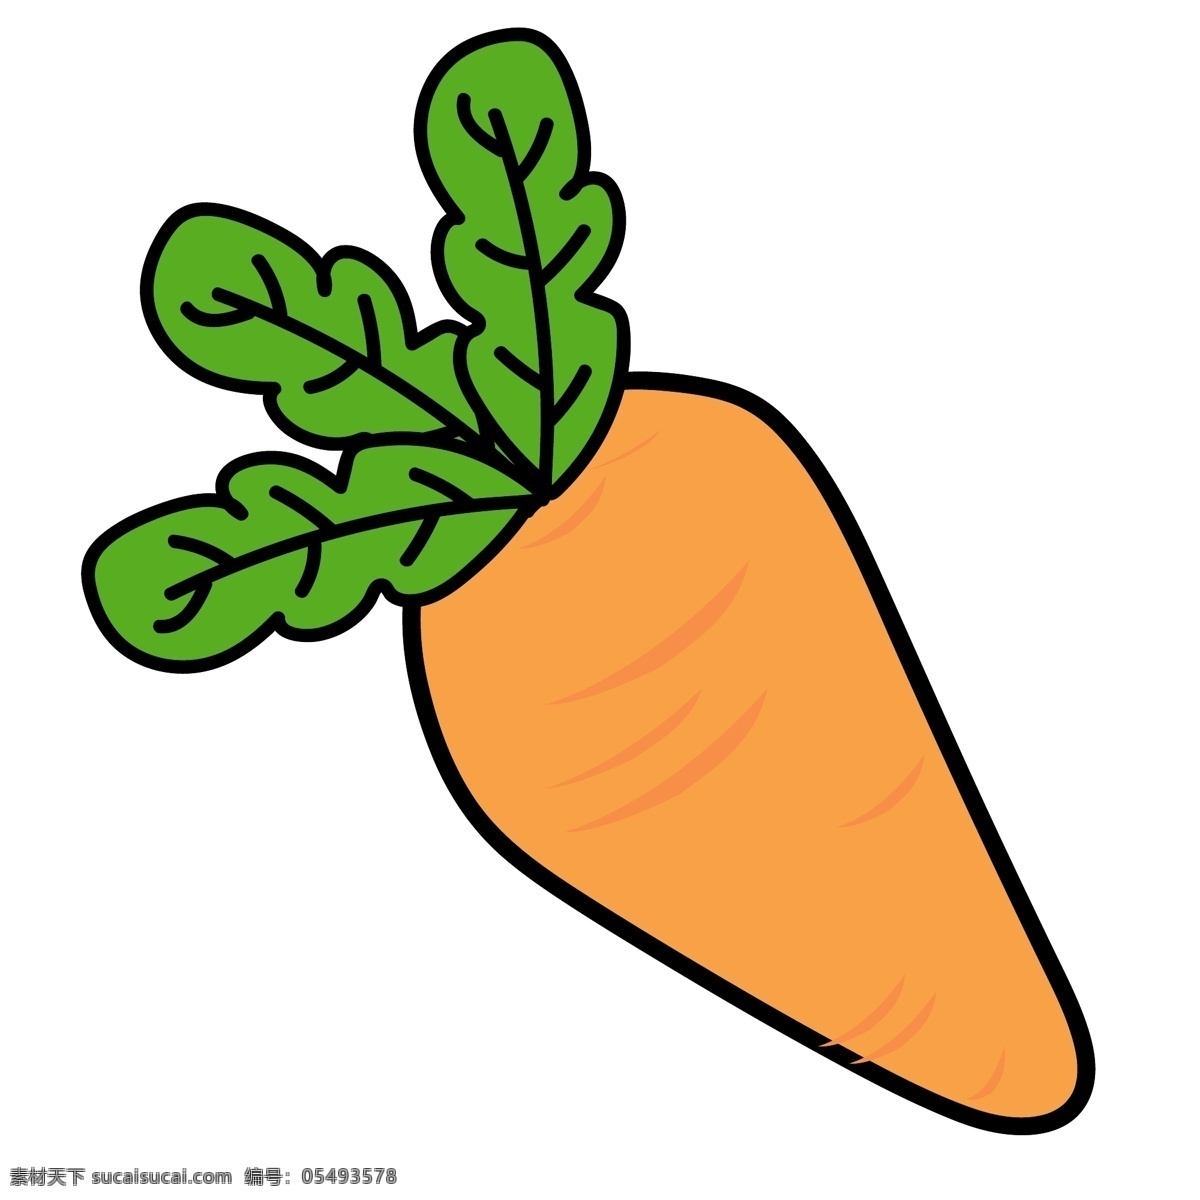 胡萝卜 水果 蔬菜 卡通 果蔬 手绘